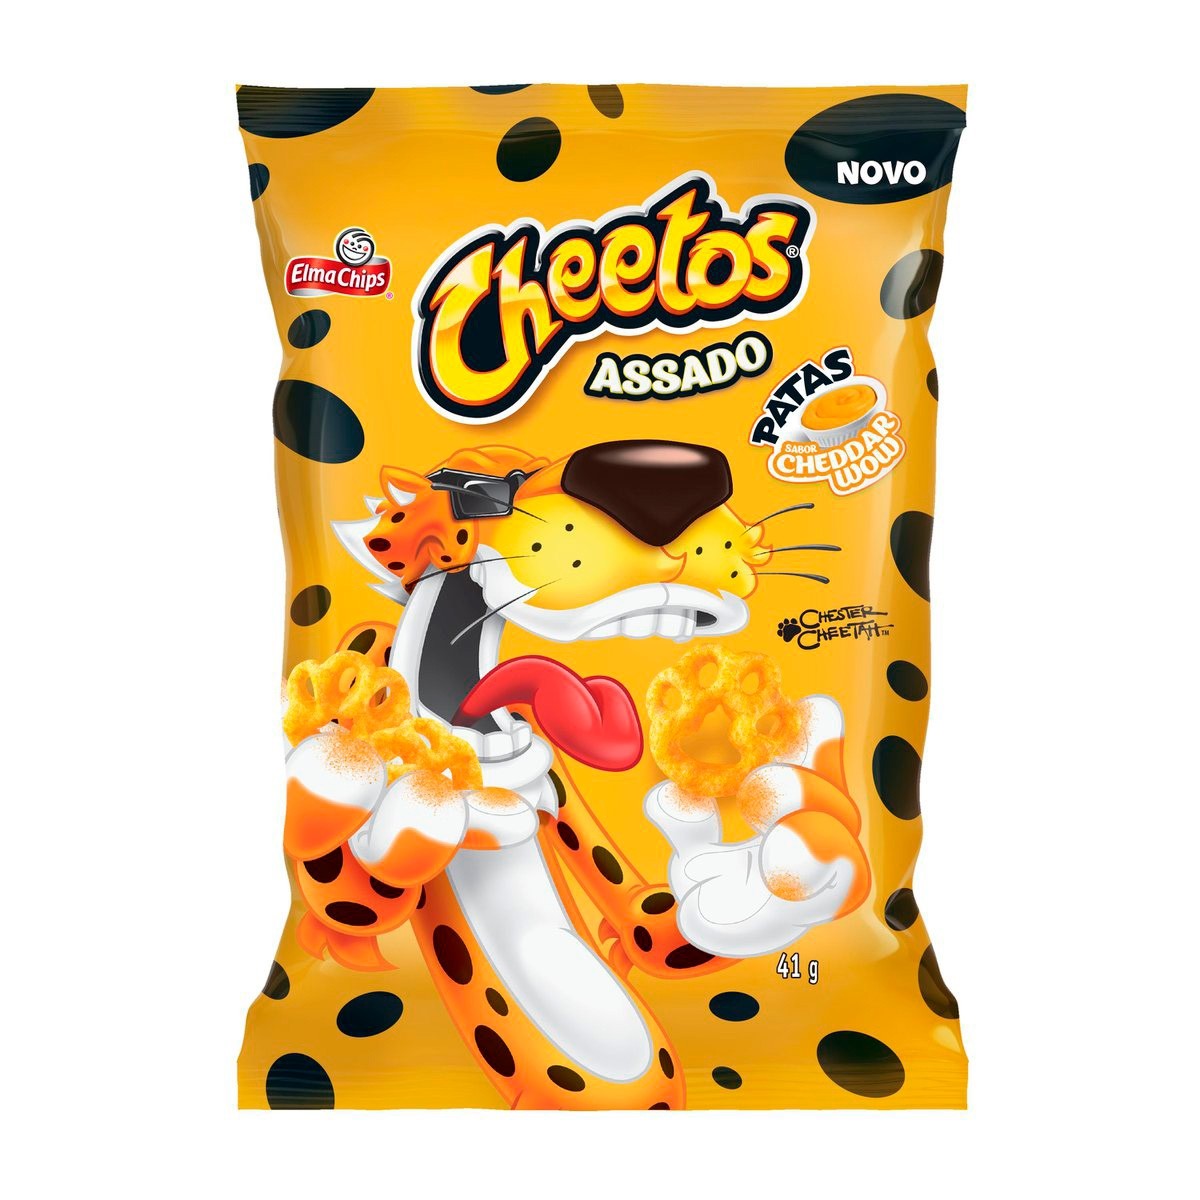 CHEETOS Crunchy Cheddar 78g